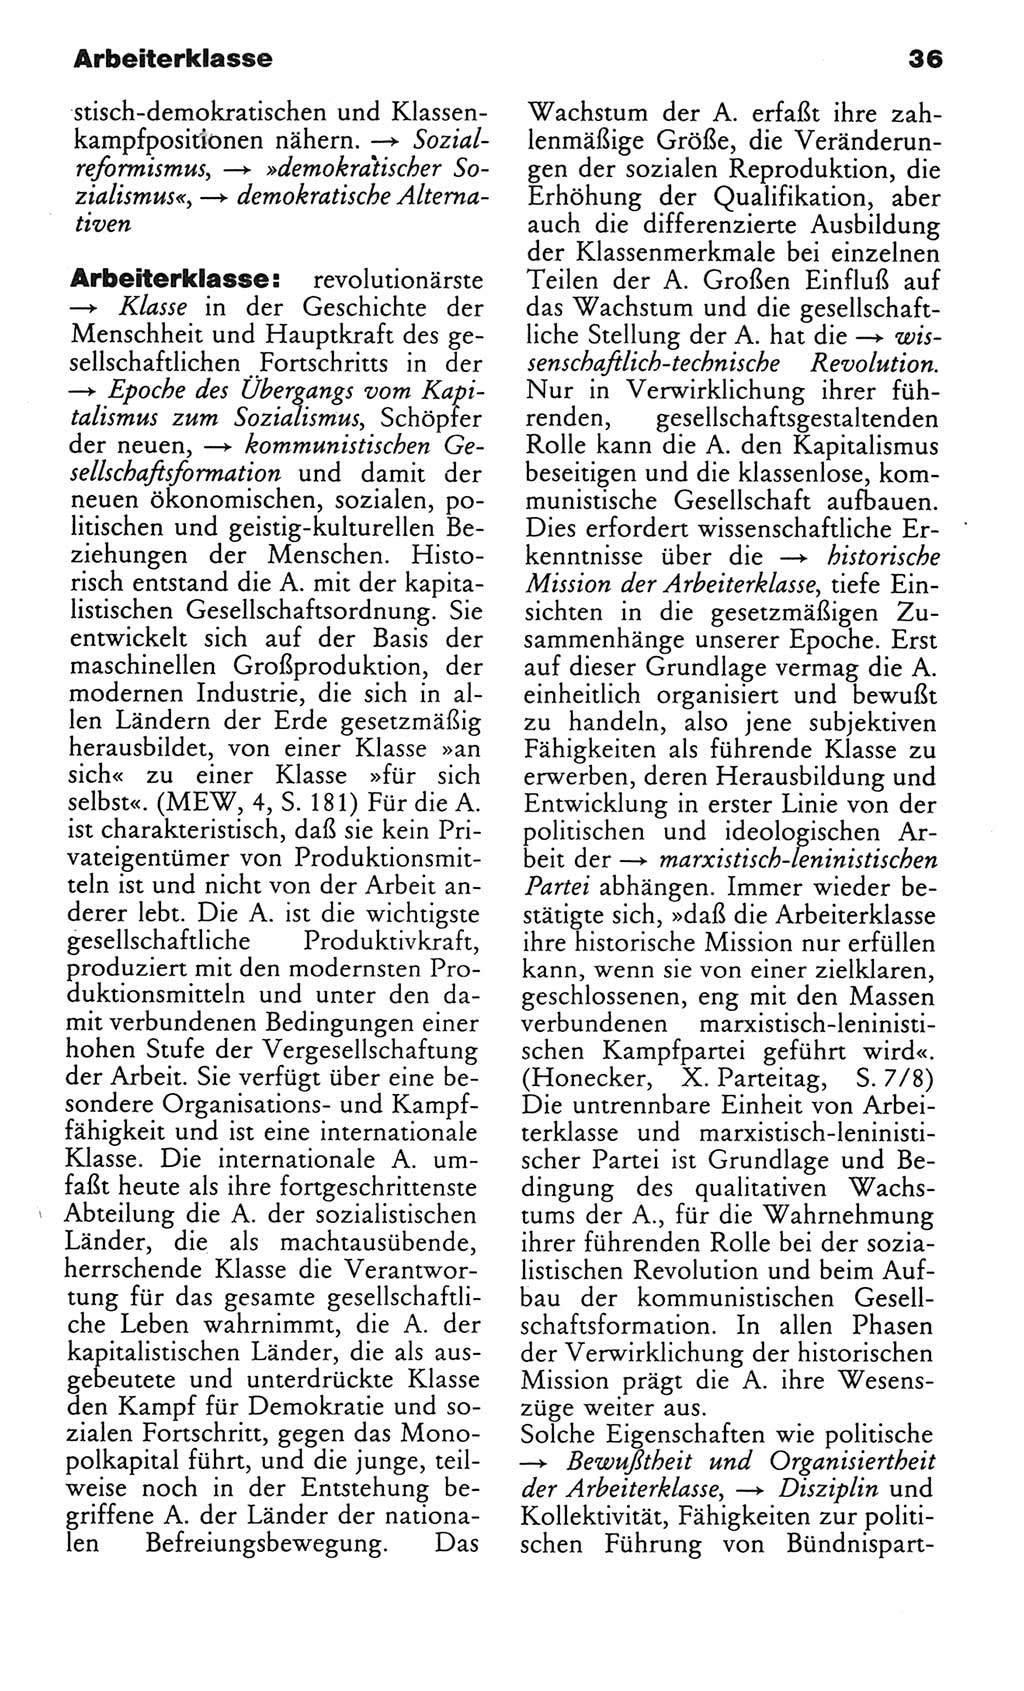 Wörterbuch des wissenschaftlichen Kommunismus [Deutsche Demokratische Republik (DDR)] 1982, Seite 36 (Wb. wiss. Komm. DDR 1982, S. 36)